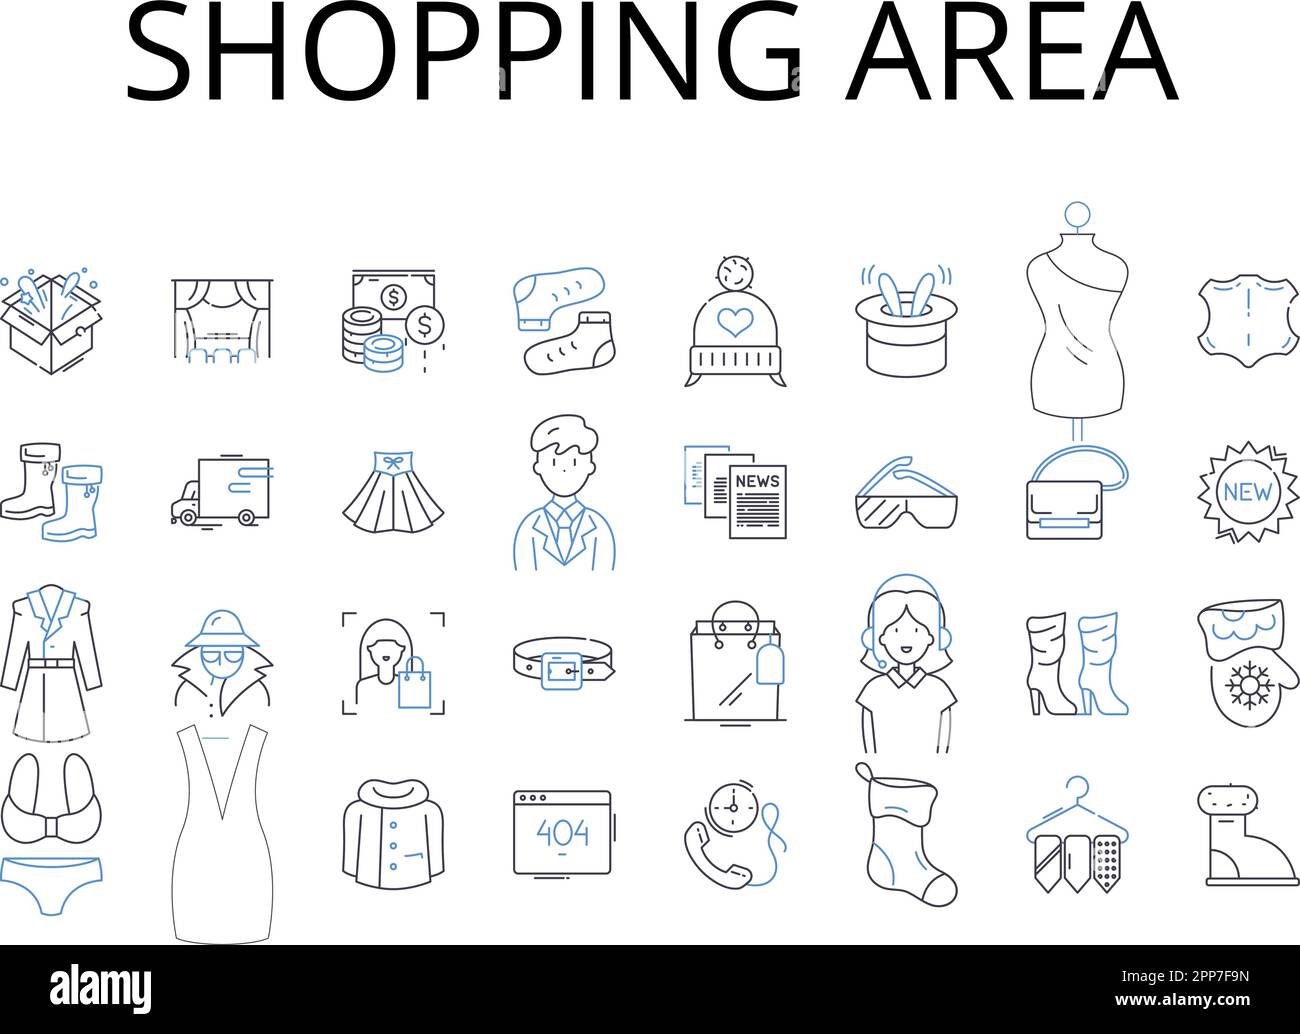 Symbolsammlung für Einkaufsviertel. Einzelhandelsviertel, Geschäftsviertel, Einkaufszentrum, Marktviertel, Gewerbegebiet, Einkaufen Stock Vektor